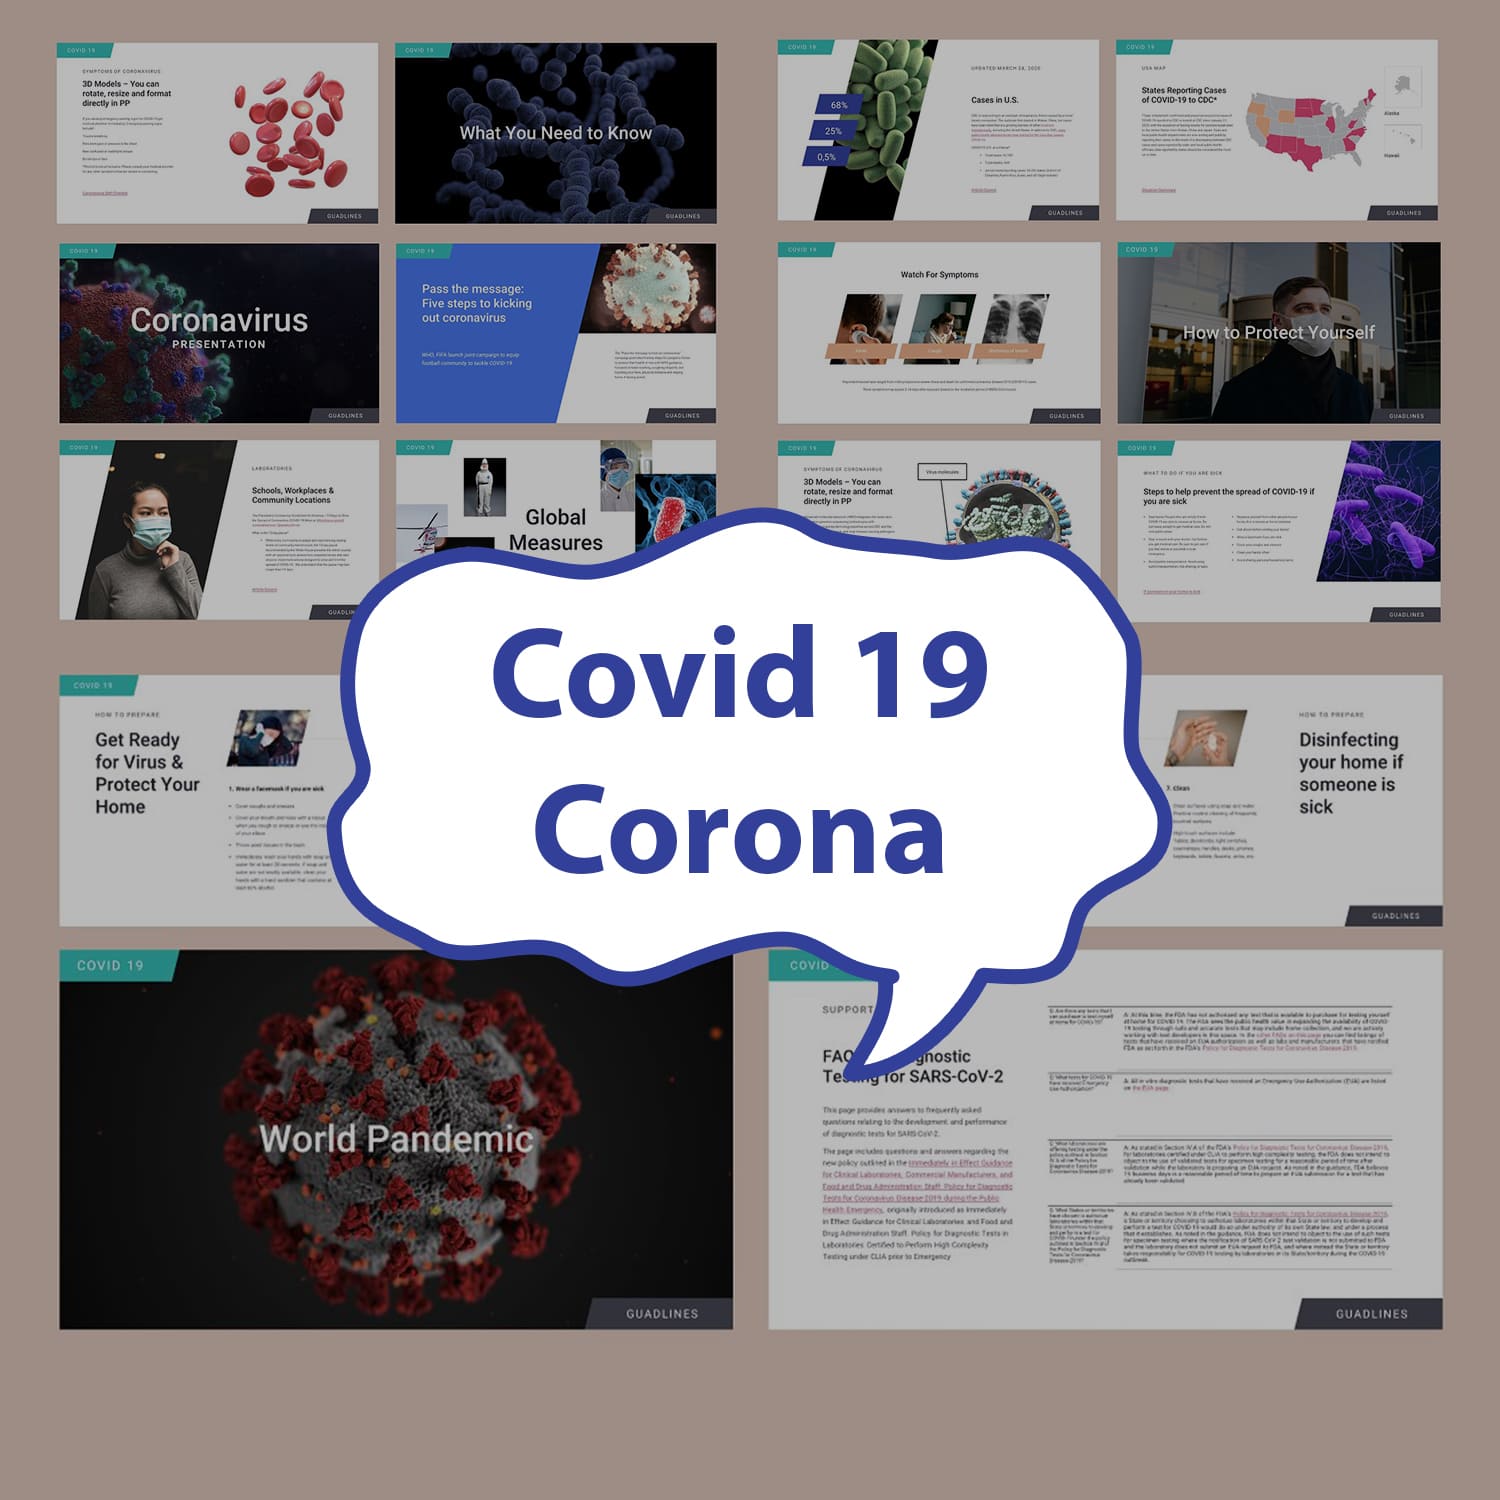 Covid 19 Corona Presentation Preview.